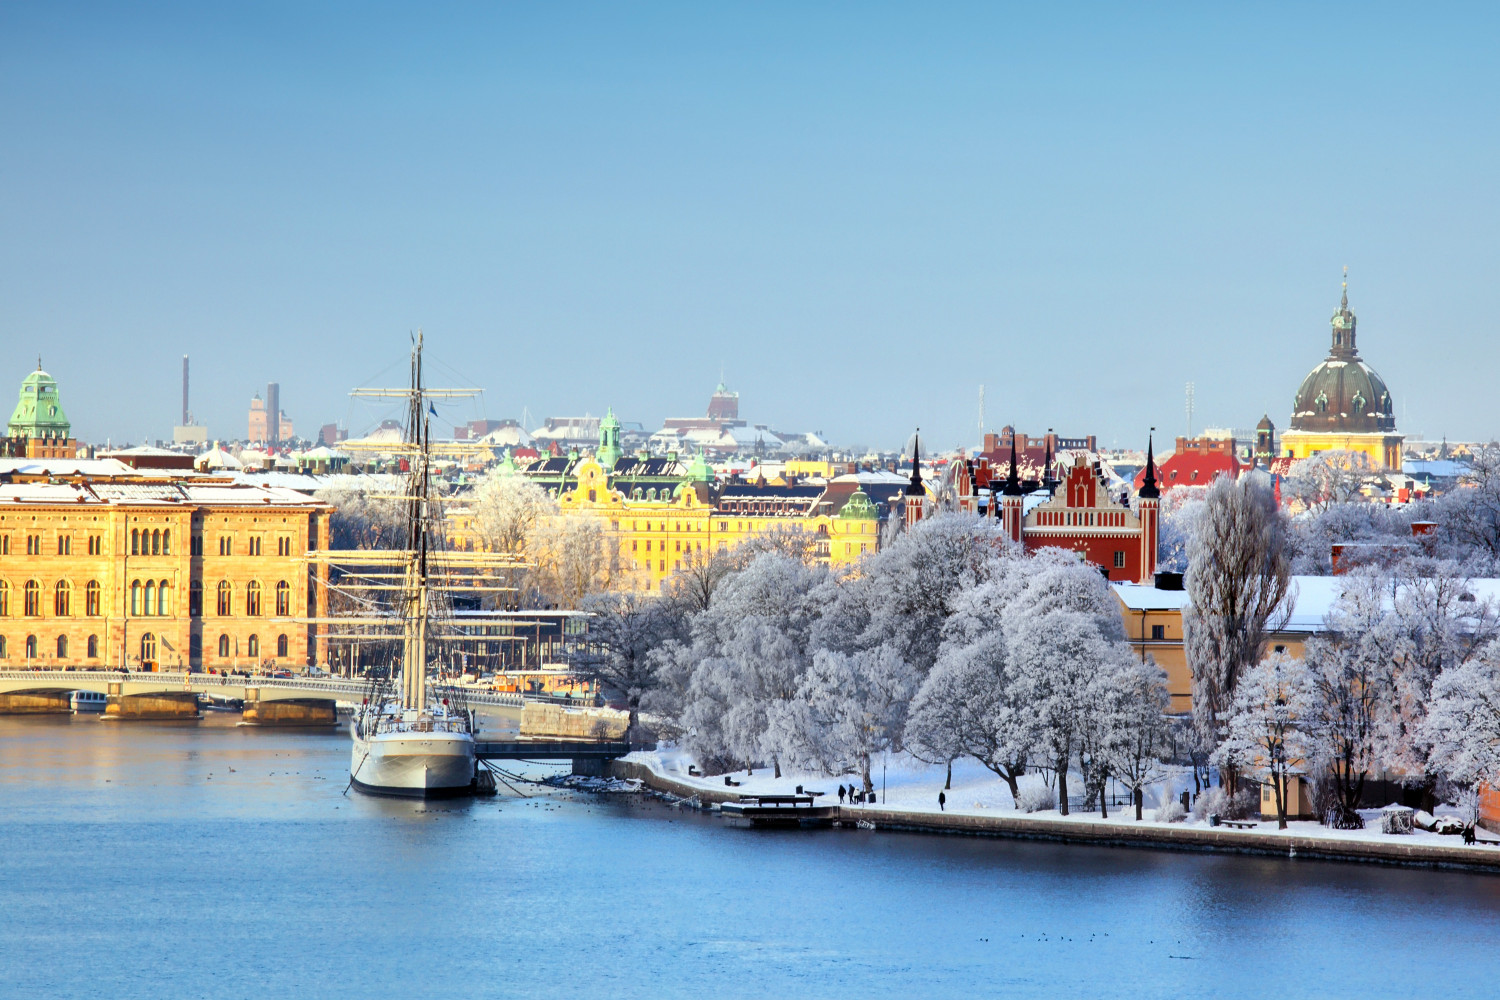 The skyline in Stockholm, Sweden.